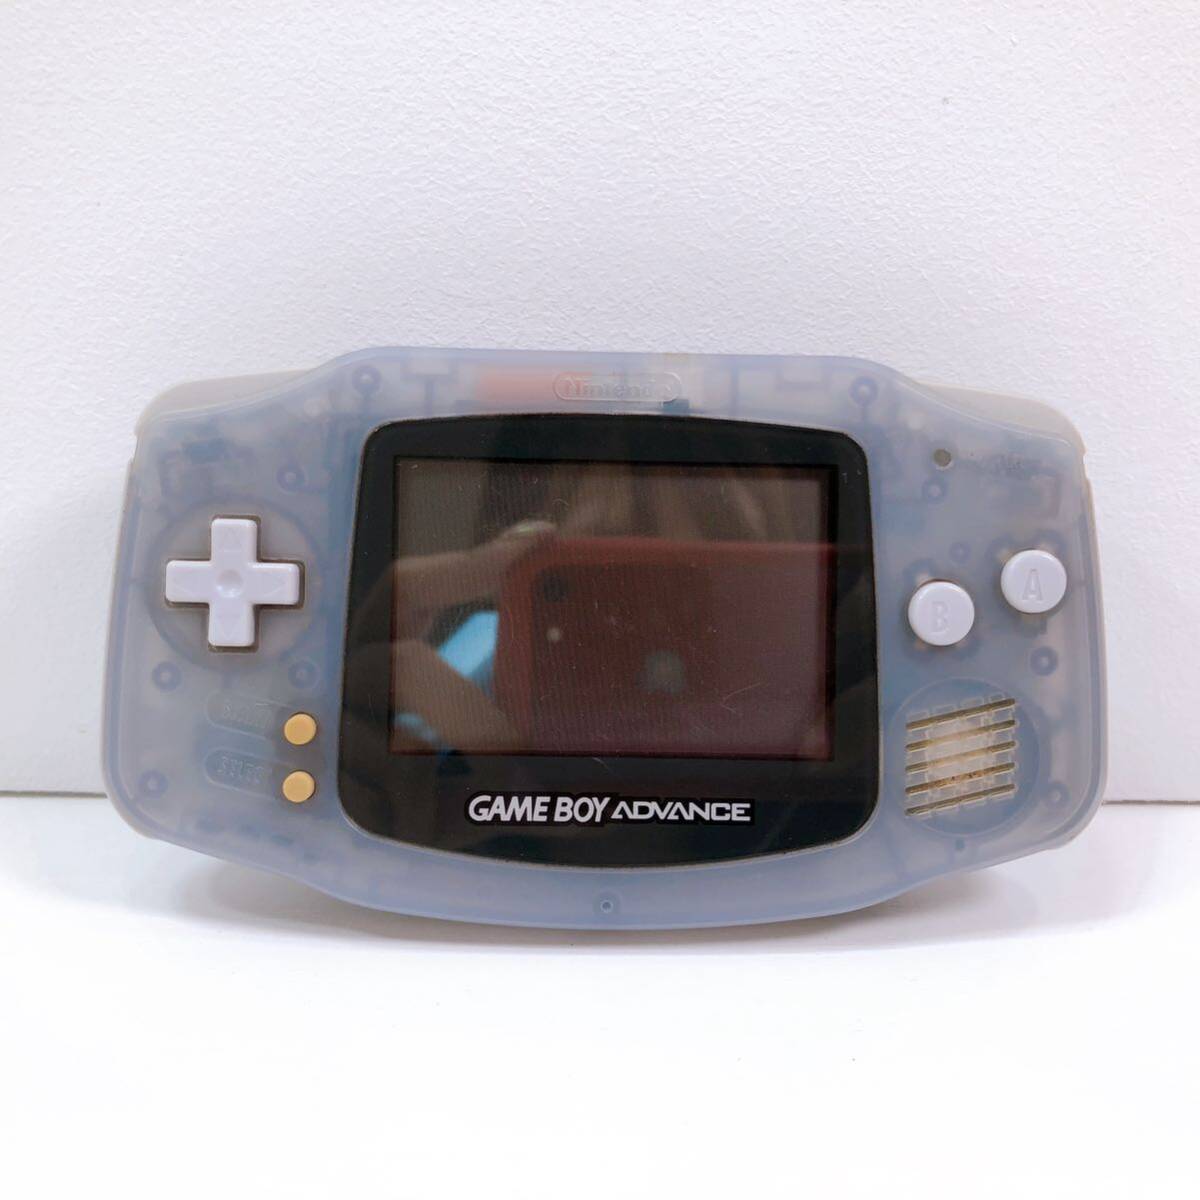 170【中古】Nintendo GAMEBOY ADVANCE 本体 AGB-001 ゲームボーイアドバンス ミルキーブルー 任天堂 電池フタなし 動作未確認 現状品の画像1